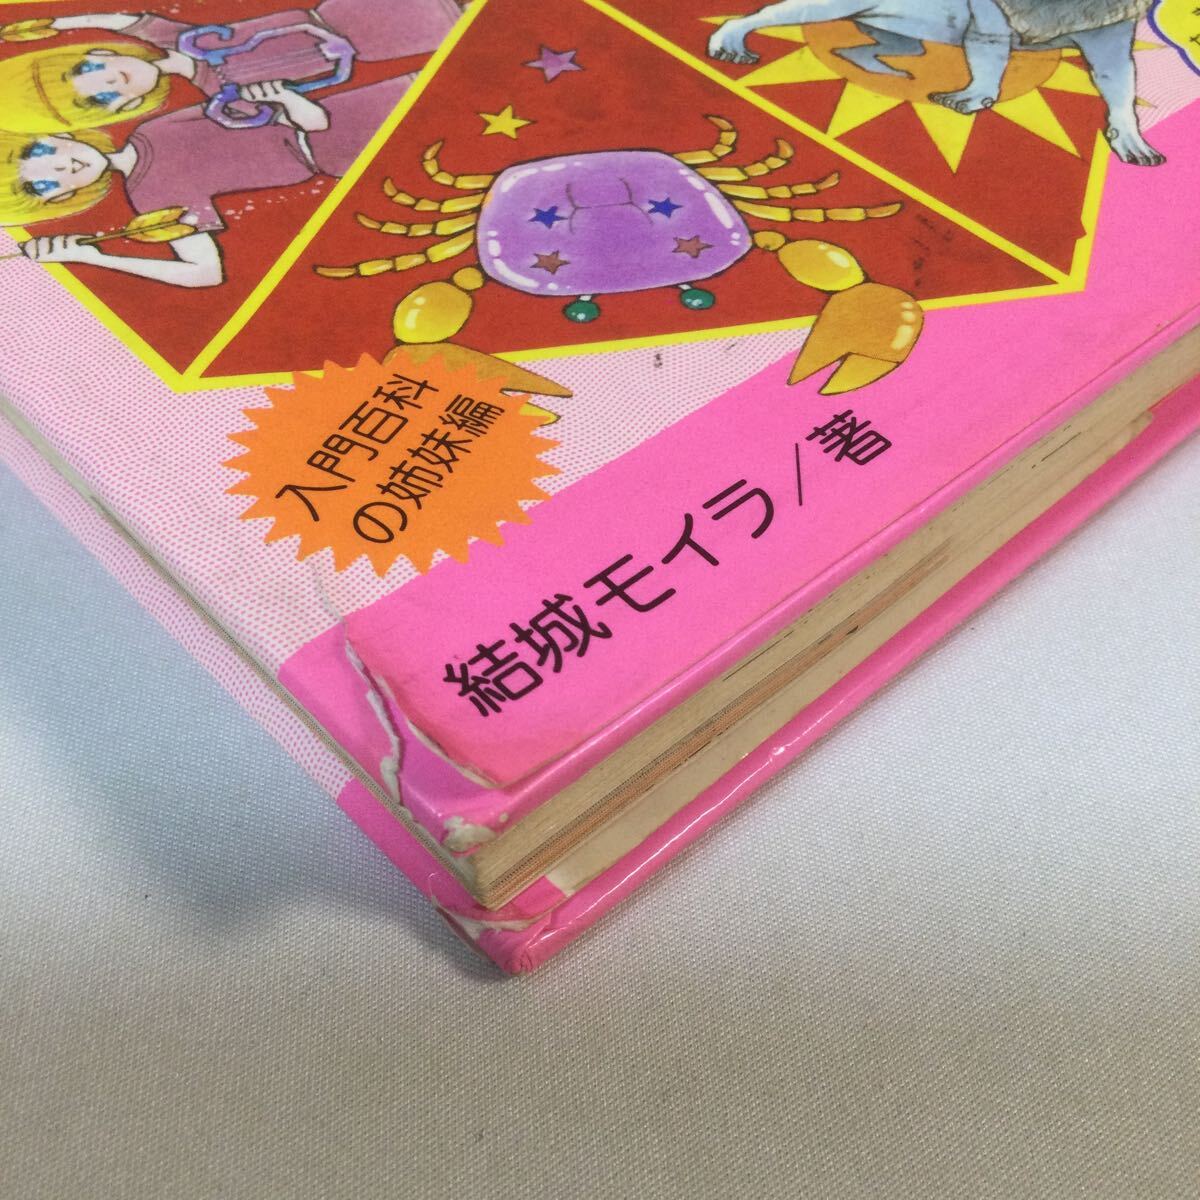  love. звезда .. нет /1985 год 3 месяц 20 день выпуск / Shogakukan Inc. Mini reti- различные предметы серии No27/. замок moila работа / обычная цена 530 иен / в это время товар 